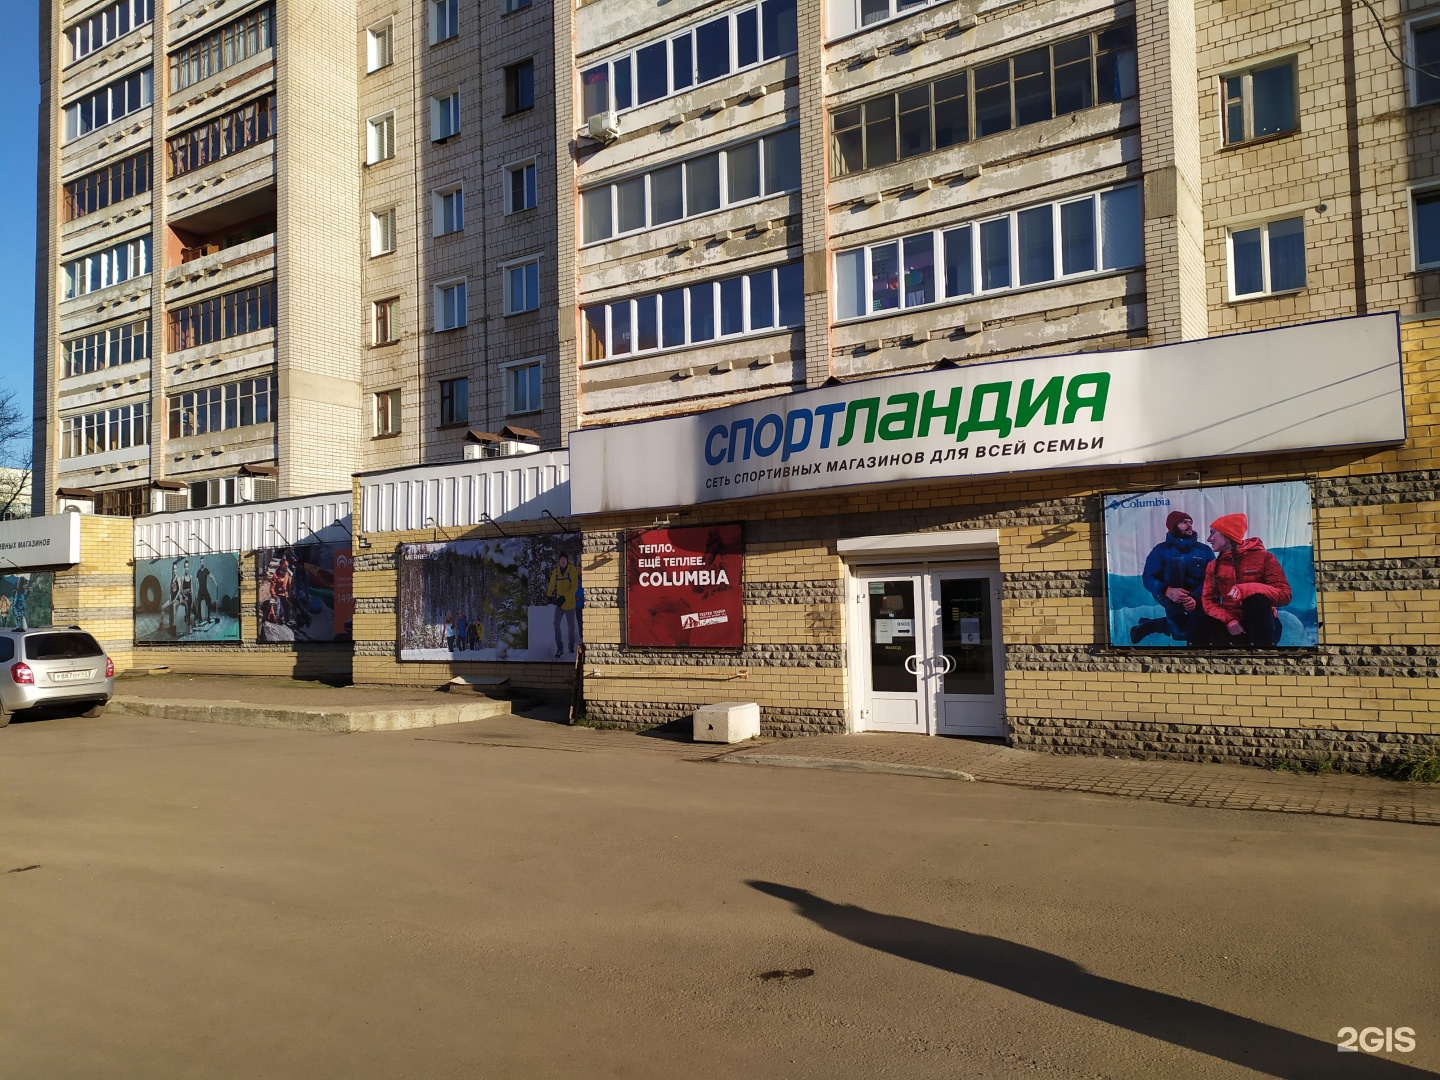 Спортландия Хабаровск Интернет Магазин